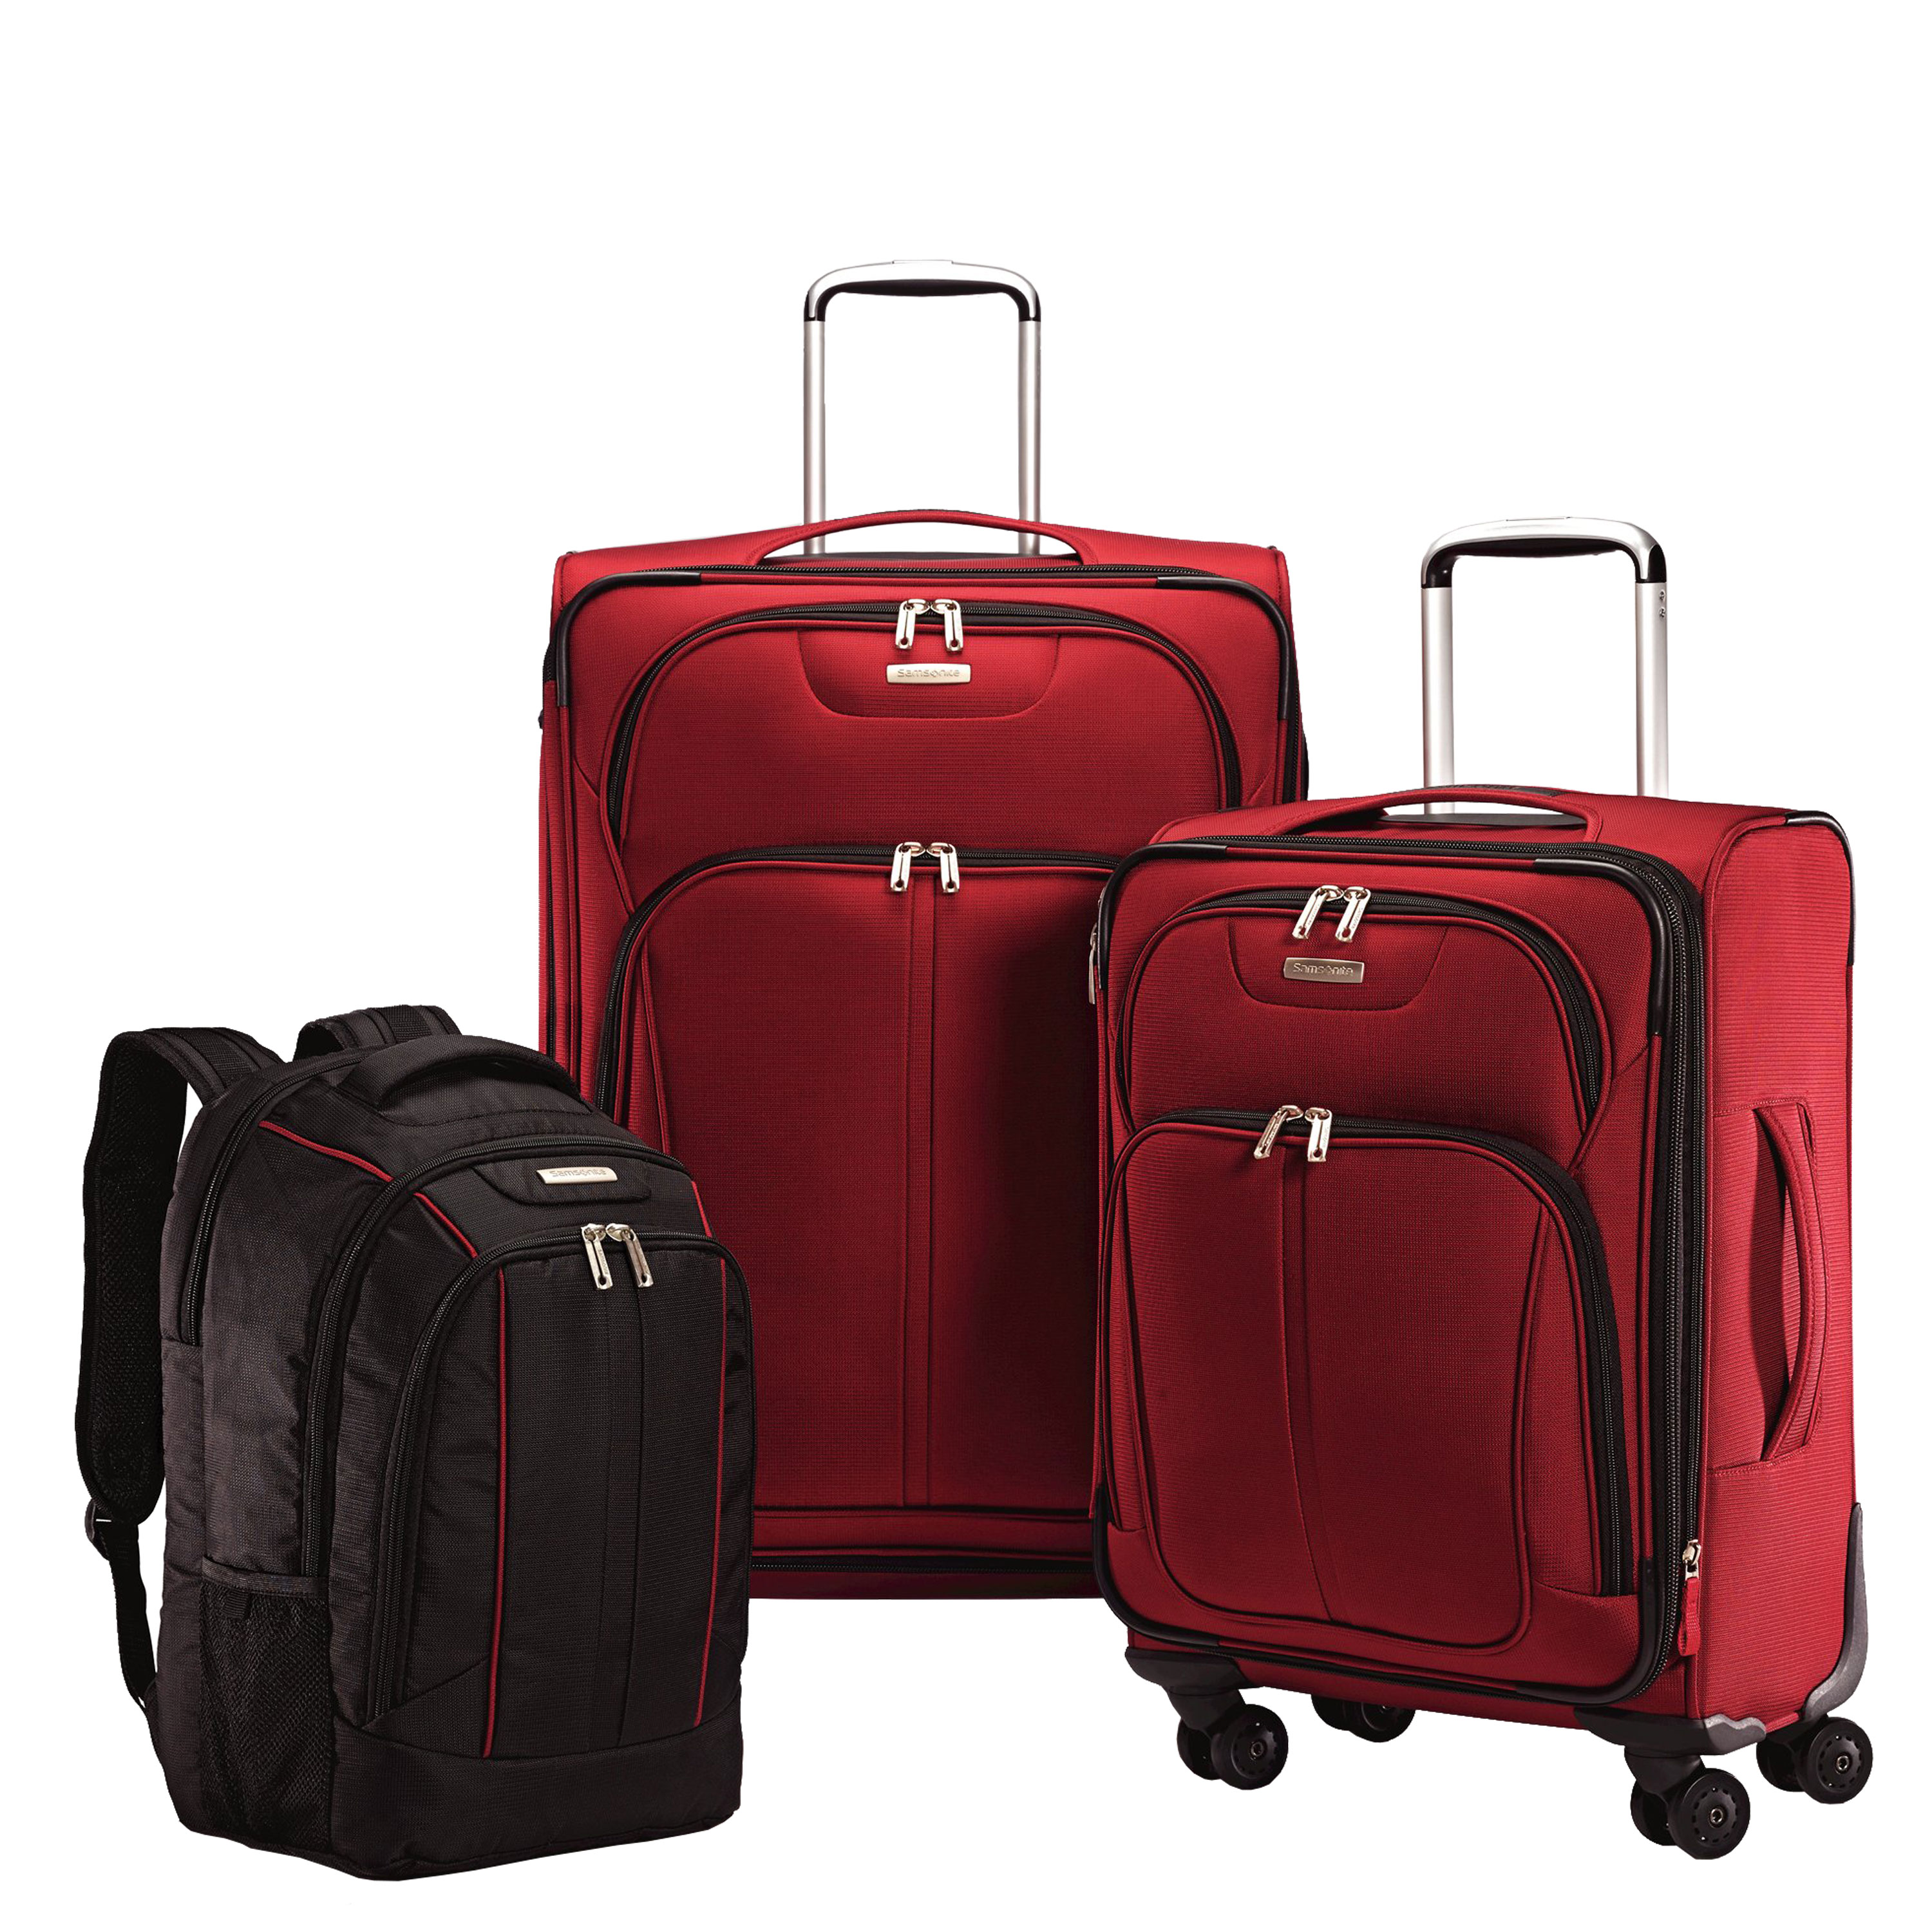 Большой сумка чемодан. Samsonite чемодан рюкзак. Комплект чемоданов Самсонит. Чемодан 121 Travel Luggage. Samsonite 80530005.